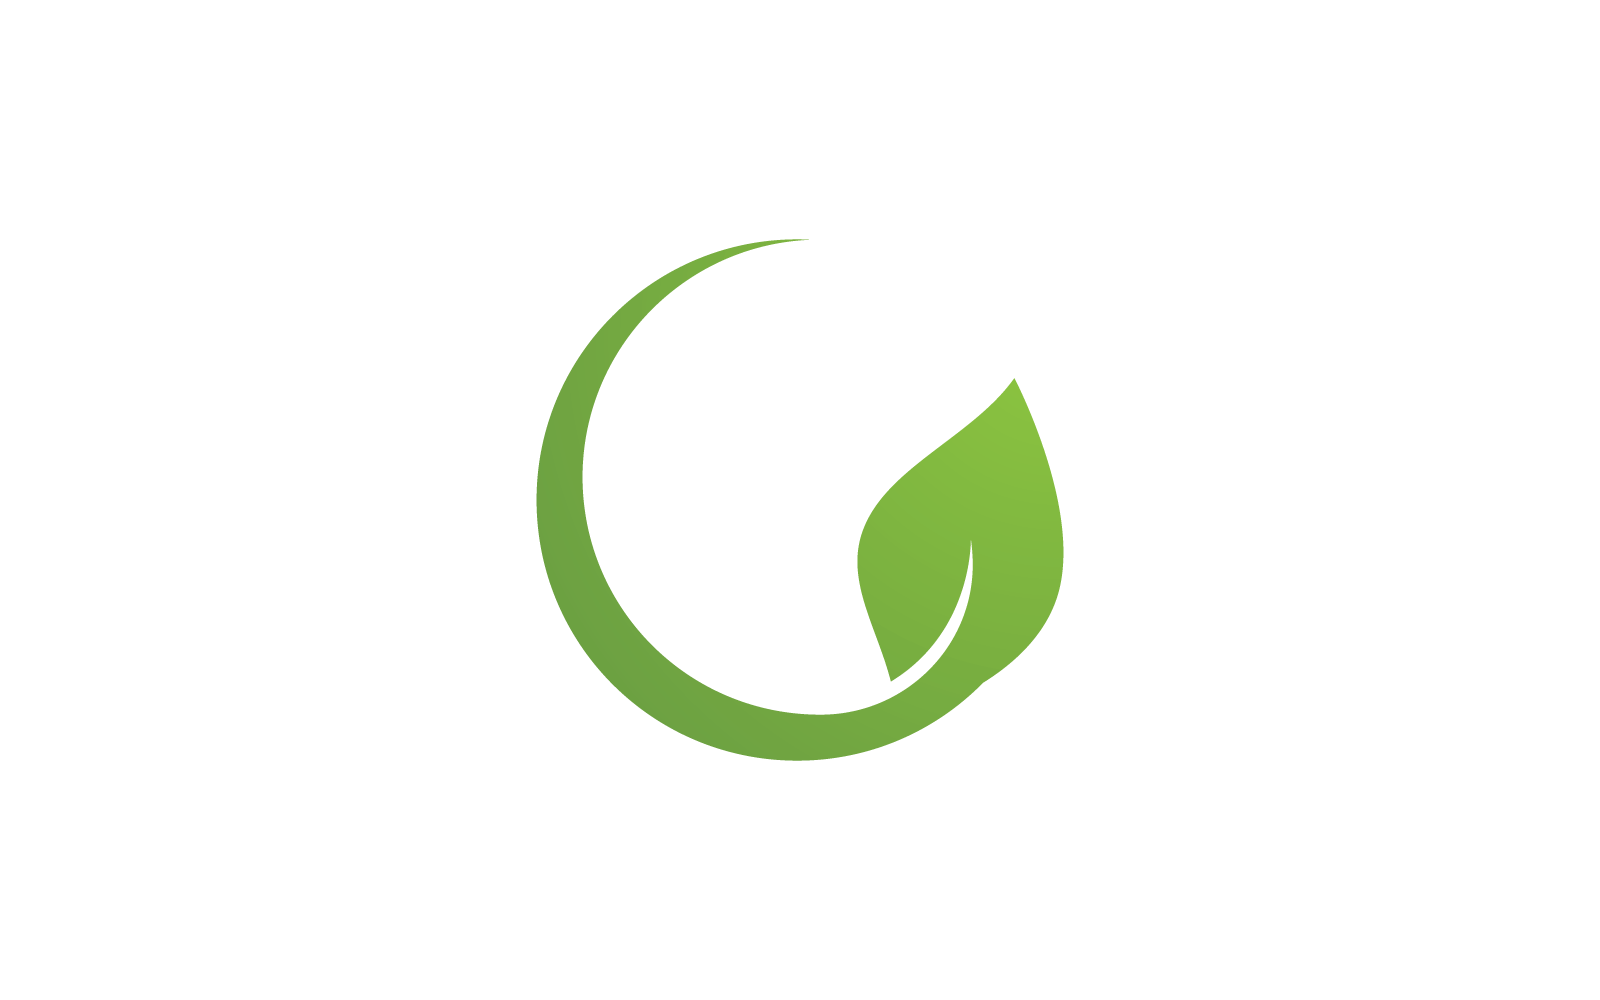 Эко зеленый лист логотип иллюстрации природа плоский дизайн